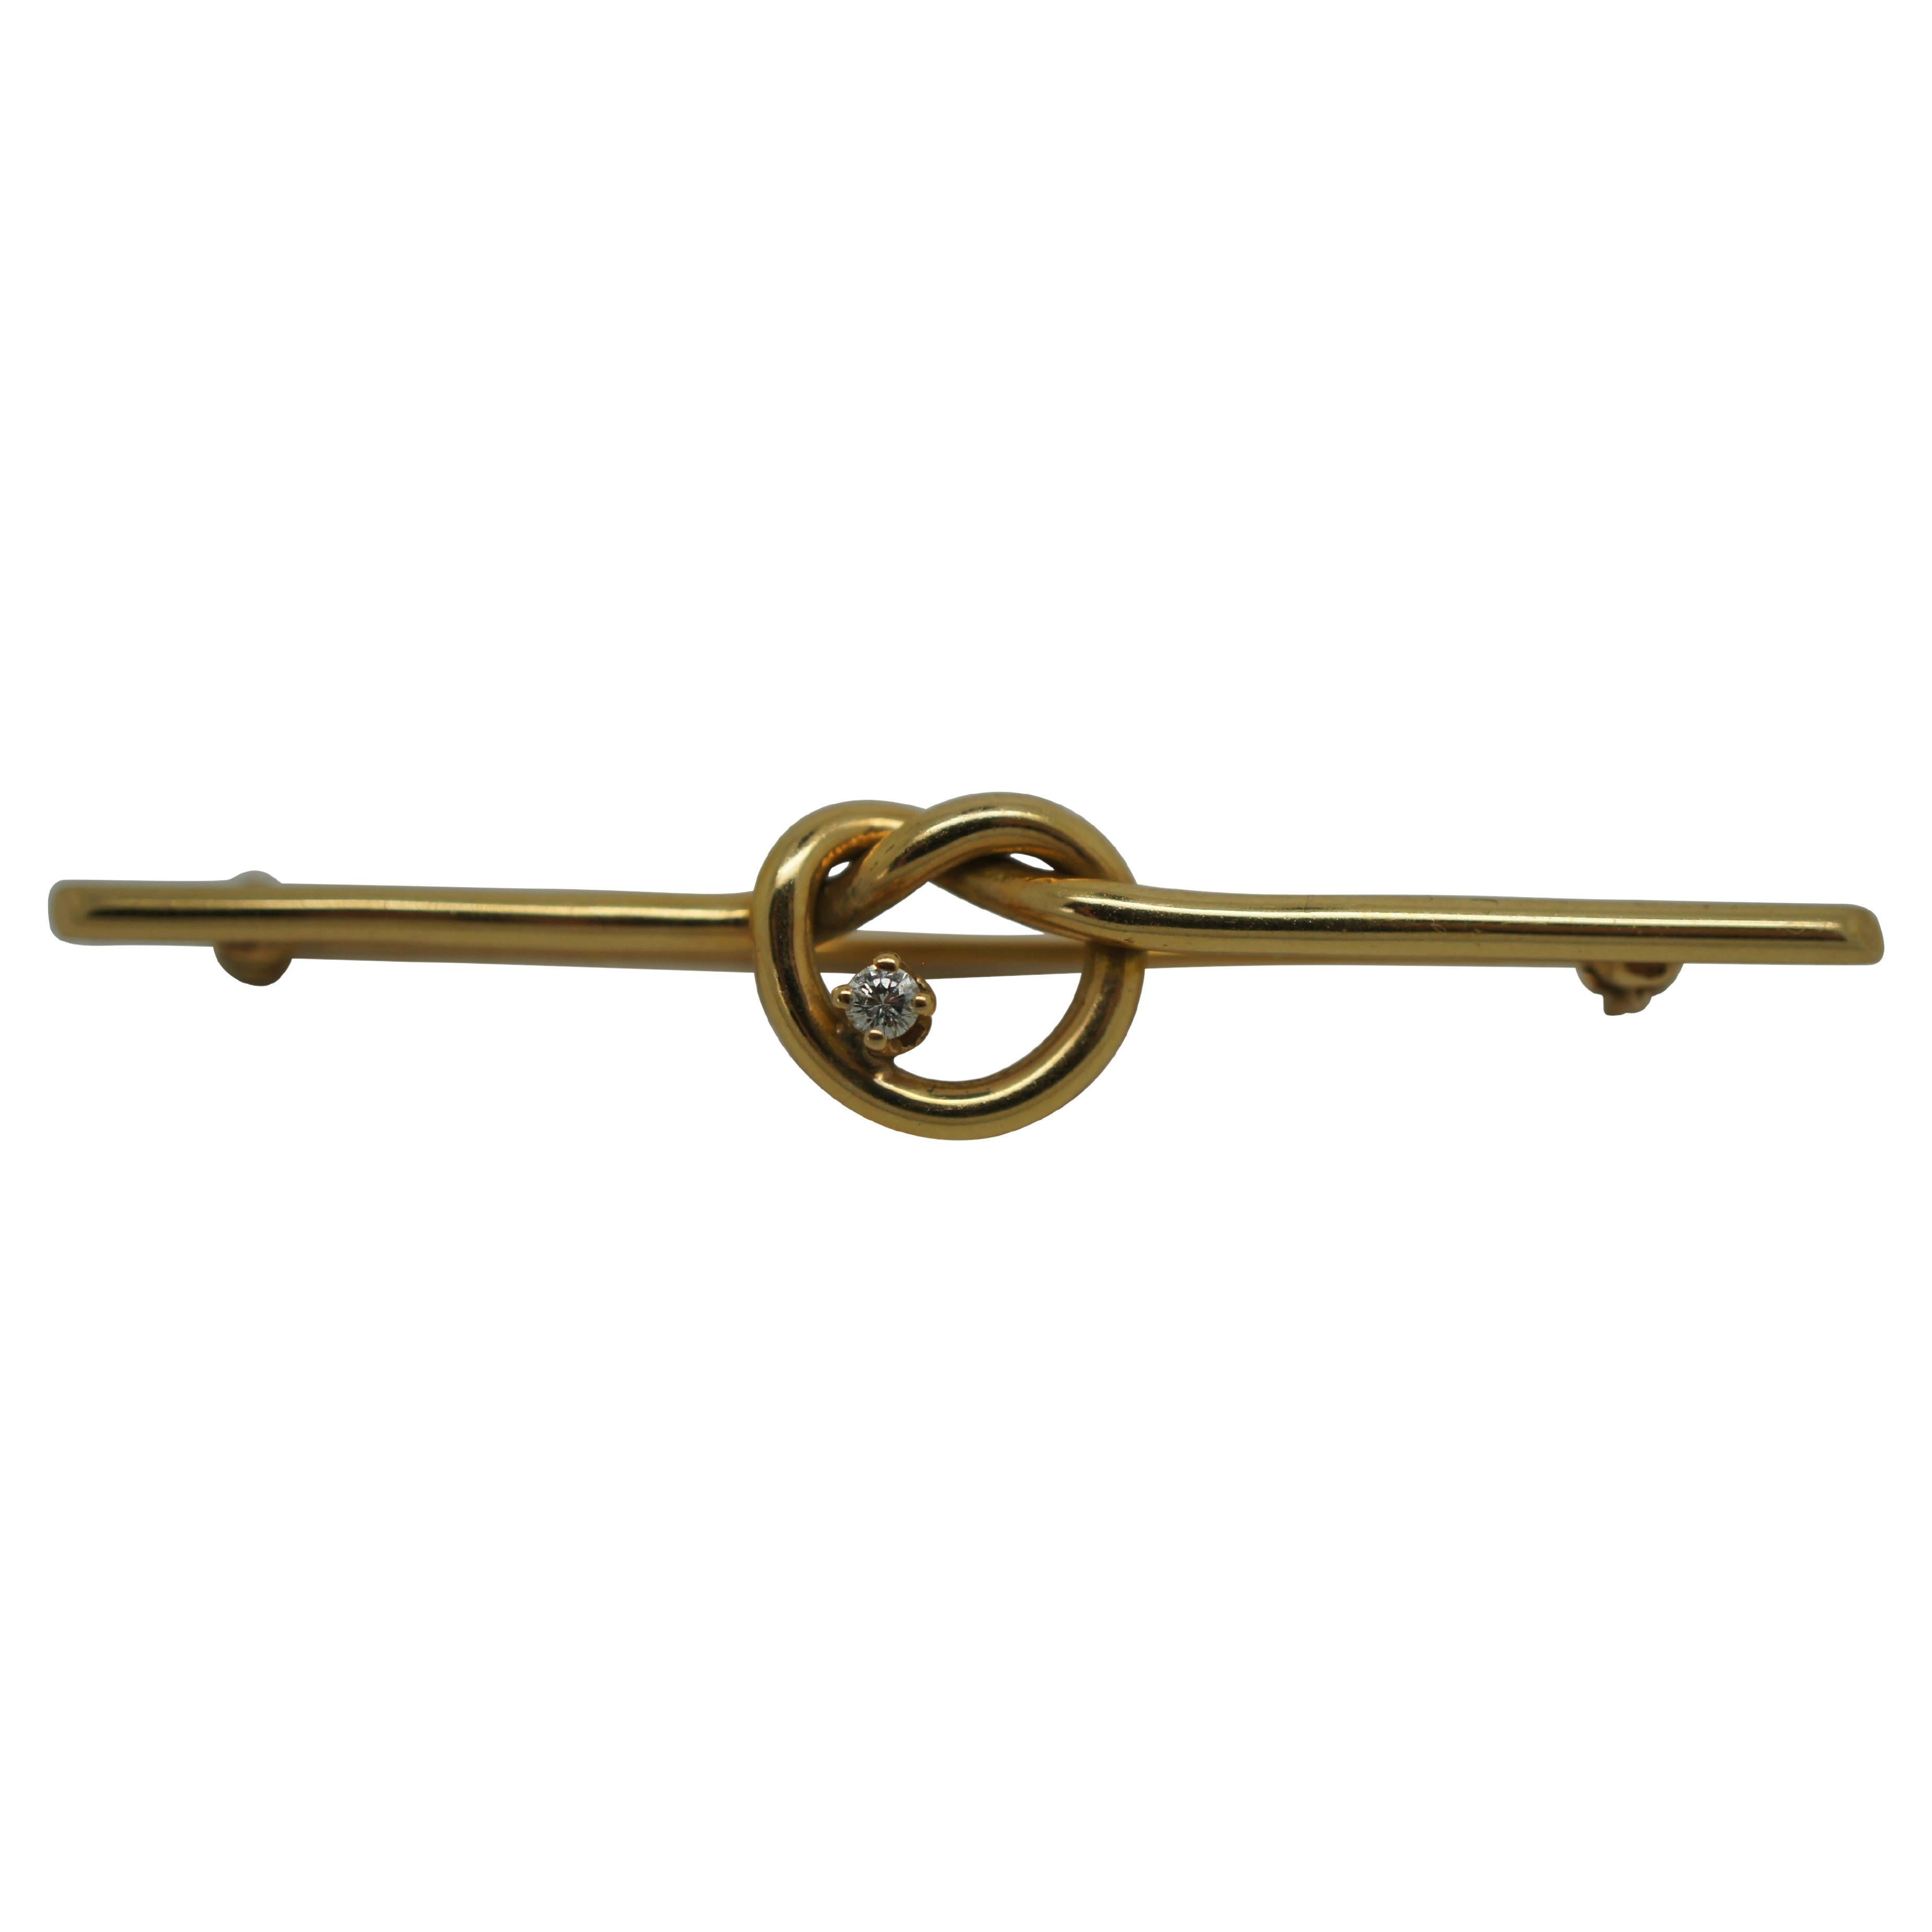 Vintage 14K Gold & Diamond Pretzel Knot Bar Brooch Pin 2" 3.4g 